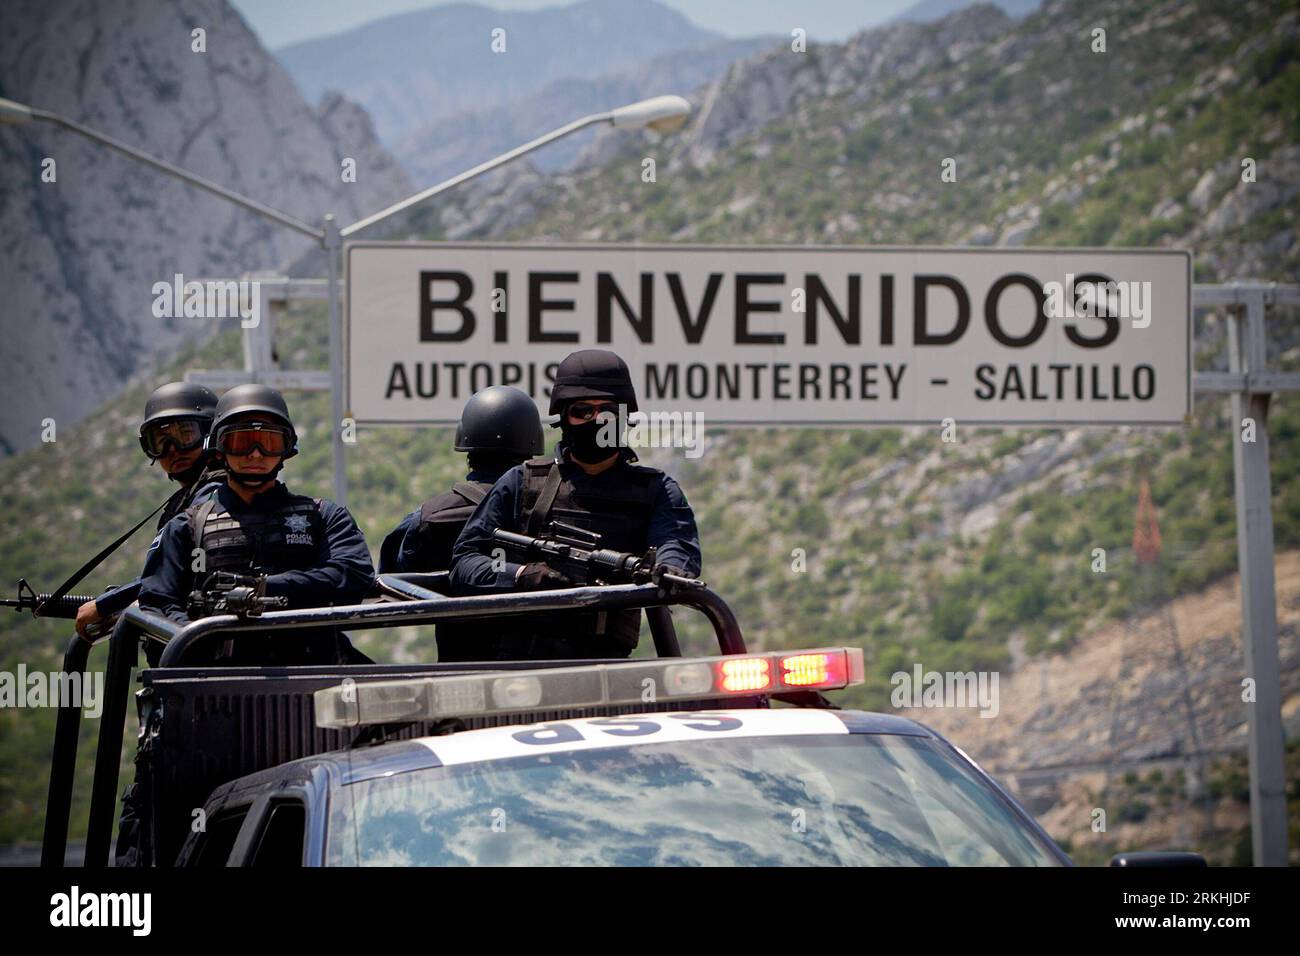 Bildnummer: 55836722 Datum: 28.08.2011 Copyright: imago/Xinhua (110829) -- MONTERREY, 29. August 2011 (Xinhua) -- Bundespolizei trifft am 28. August 2011 in Monterrey, Nuevo Leon, Nordmexiko, ein. Weitere Bundesagenten wurden nach Monterrey geschickt, um die Sicherheit zu verstärken, nachdem am vergangenen Donnerstag eine bewaffnete Gruppe das Casino Royale in Monterrey stürmte und verbrannte, wobei mindestens 52 Menschen ums Leben kamen. (Xinhua/Pedro Mera) MEXICO-MONTERREY-VIOLENCE-CASINO PUBLICATIONxNOTxINxCHN Gesellschaft Kriminalität Gewalt Sicherheit Polizei xjh 2011 quer o Polizisten Willkommen Bildnummer 55836722 Datum 28 08 2011 Copyright Imago XINHUA Stockfoto